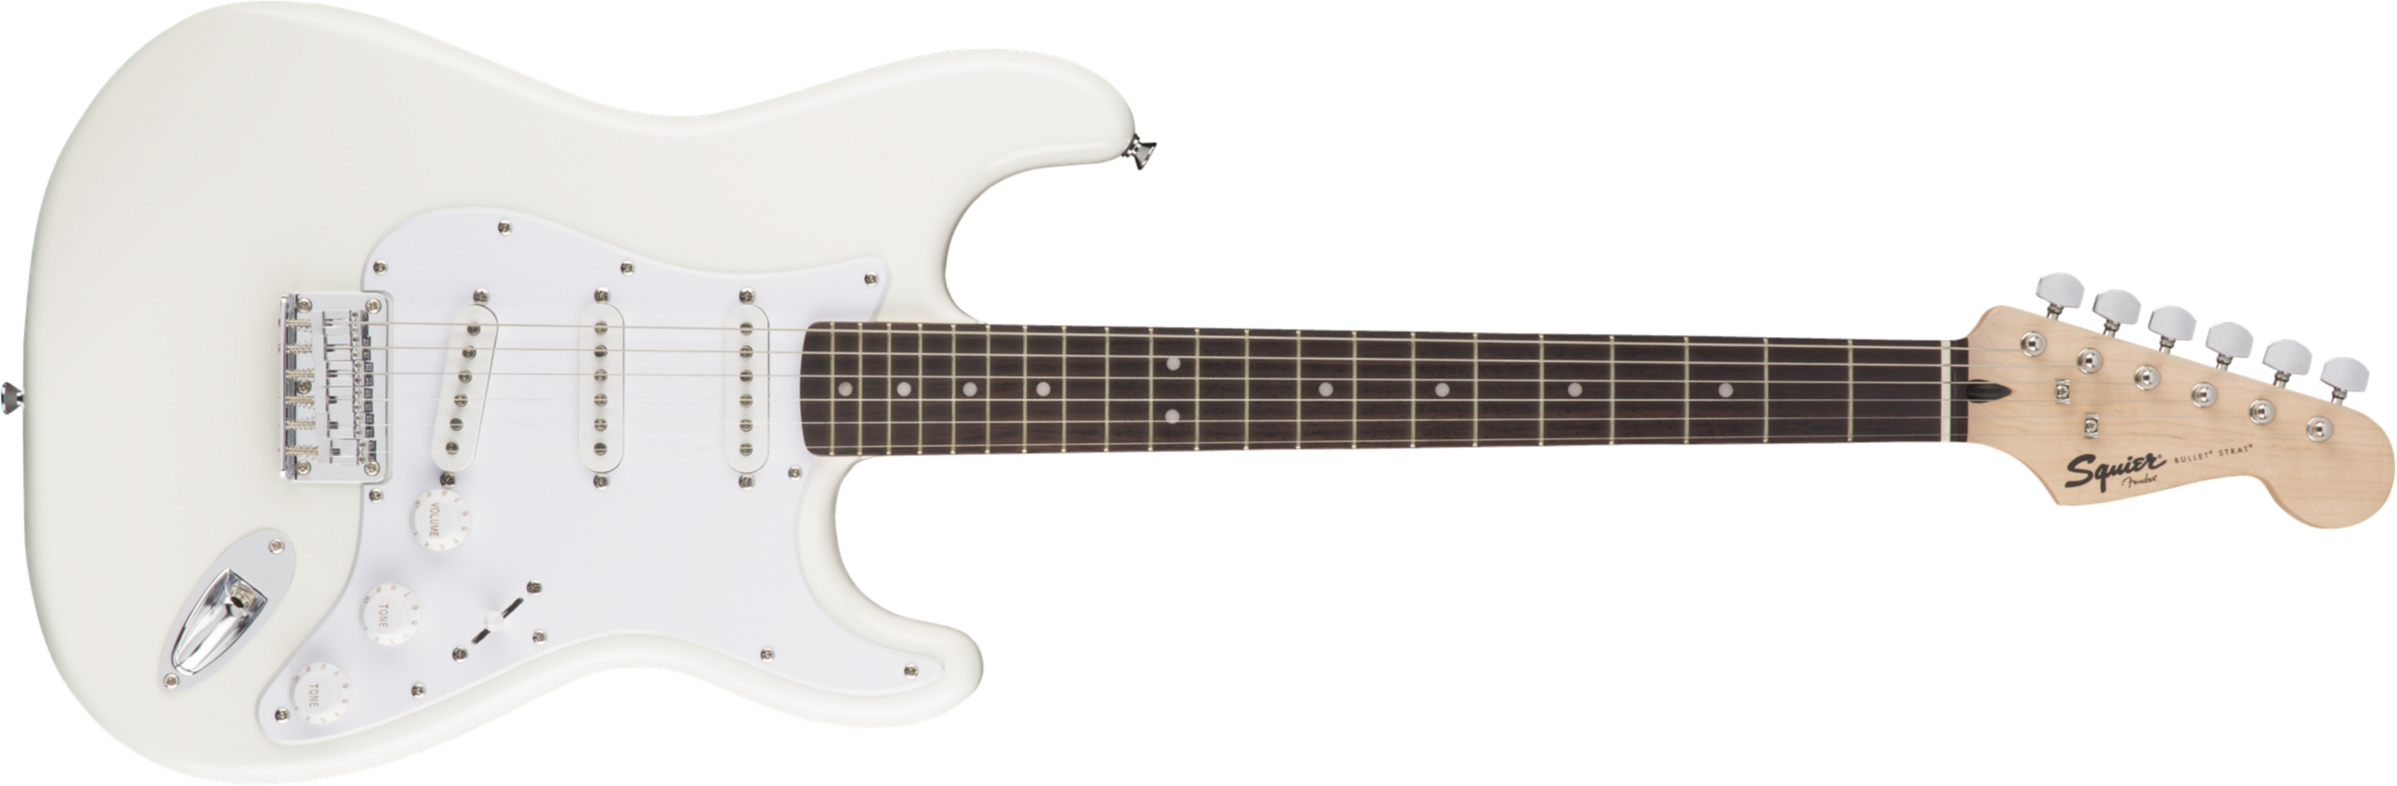 Squier Bullet Stratocaster Ht Sss (lau) - Arctic White - Guitarra eléctrica con forma de str. - Main picture